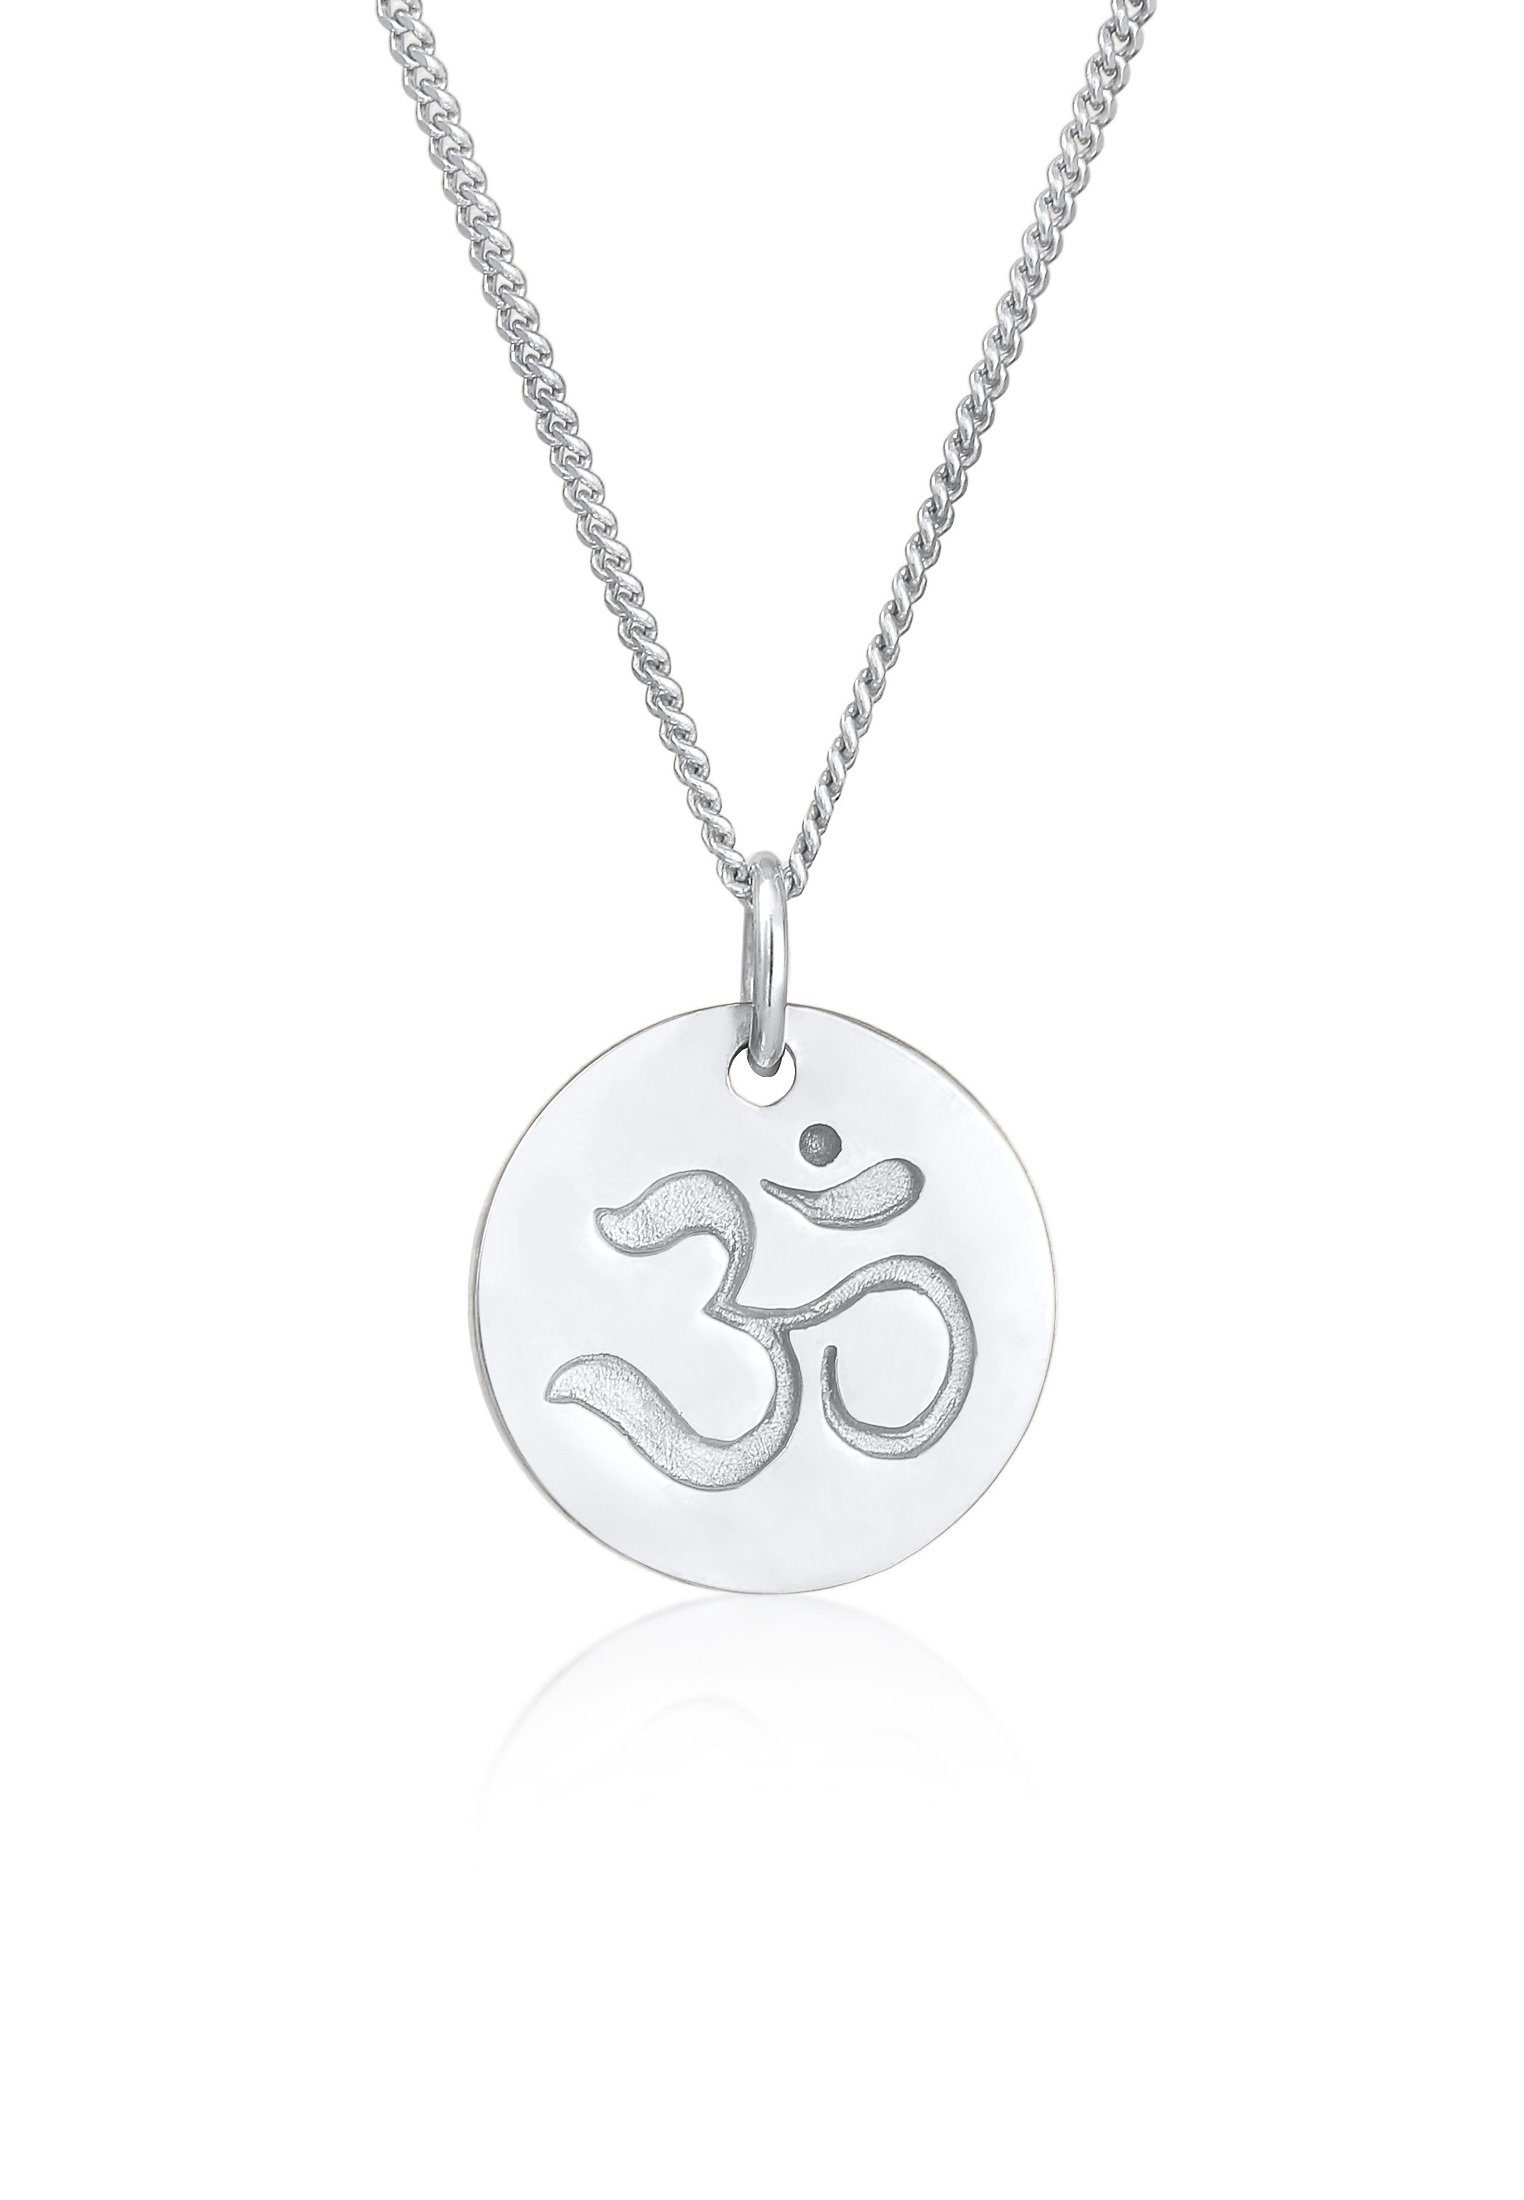 Symbol Kette Yoga Om mit Elli Mantra Silber, 925 Om Anhänger